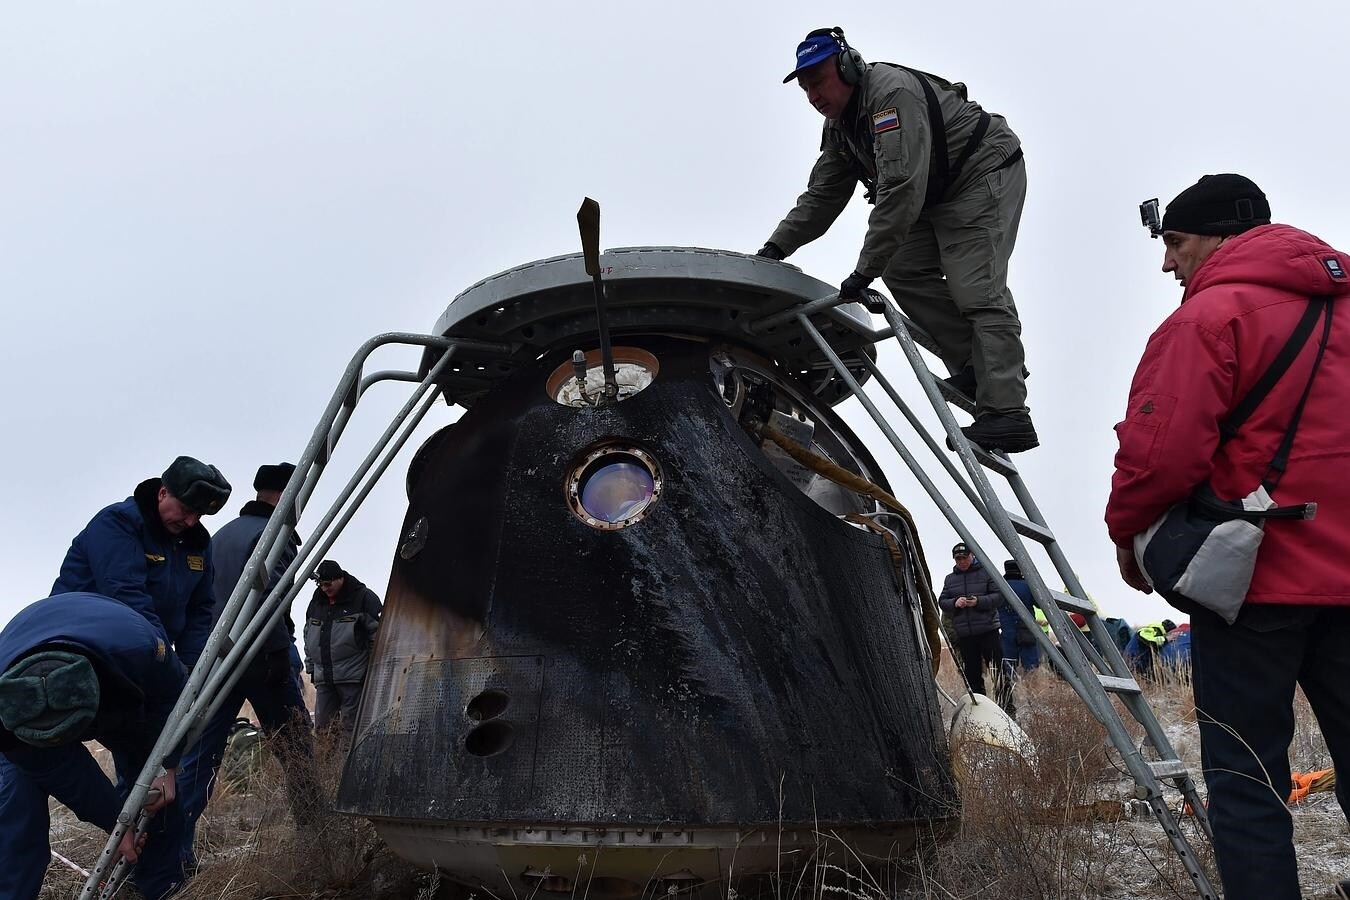 Miembros de los equipos de rescate se aproximan a la nave rusa Soyuz TMA-18M tras su aterrizaje con tres astronautas a bordo, cerca de la ciudad de Dzhezkazgan en Kazajistán. Los tres integrantes de la expedición son los rusos Serguéi Volkov y Mijaíl Kornienko, y el estadounidense Scott Kelly. Los dos últimos regresaron a la Tierra después de 340 días en la Estación Espacial Internacional (ISS). 